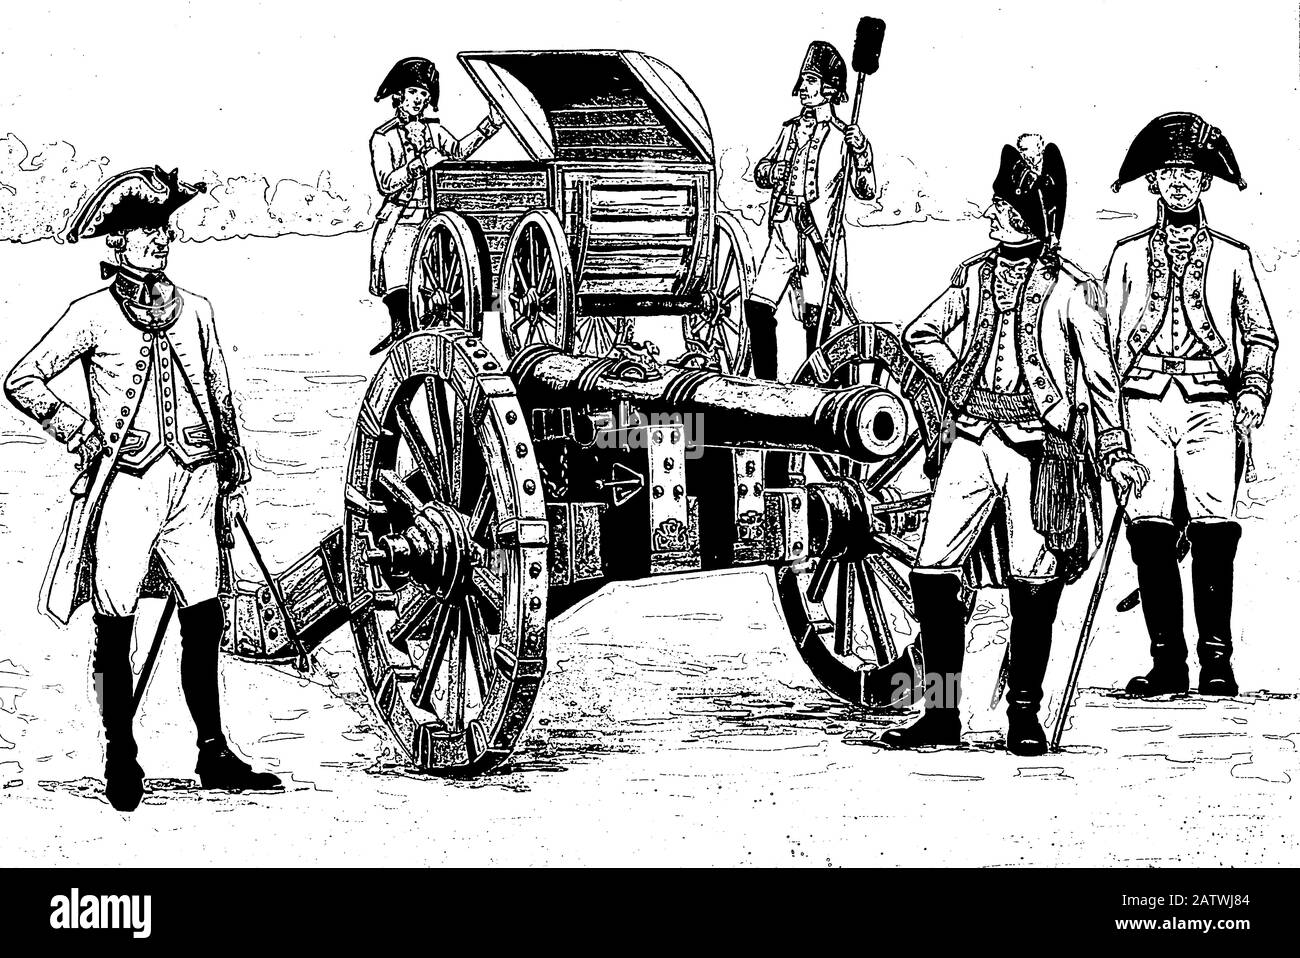 Illustration de l'équipage d'artillerie allemand. Soldats et officiers avant la bataille. Illustration Cannon. Banque D'Images